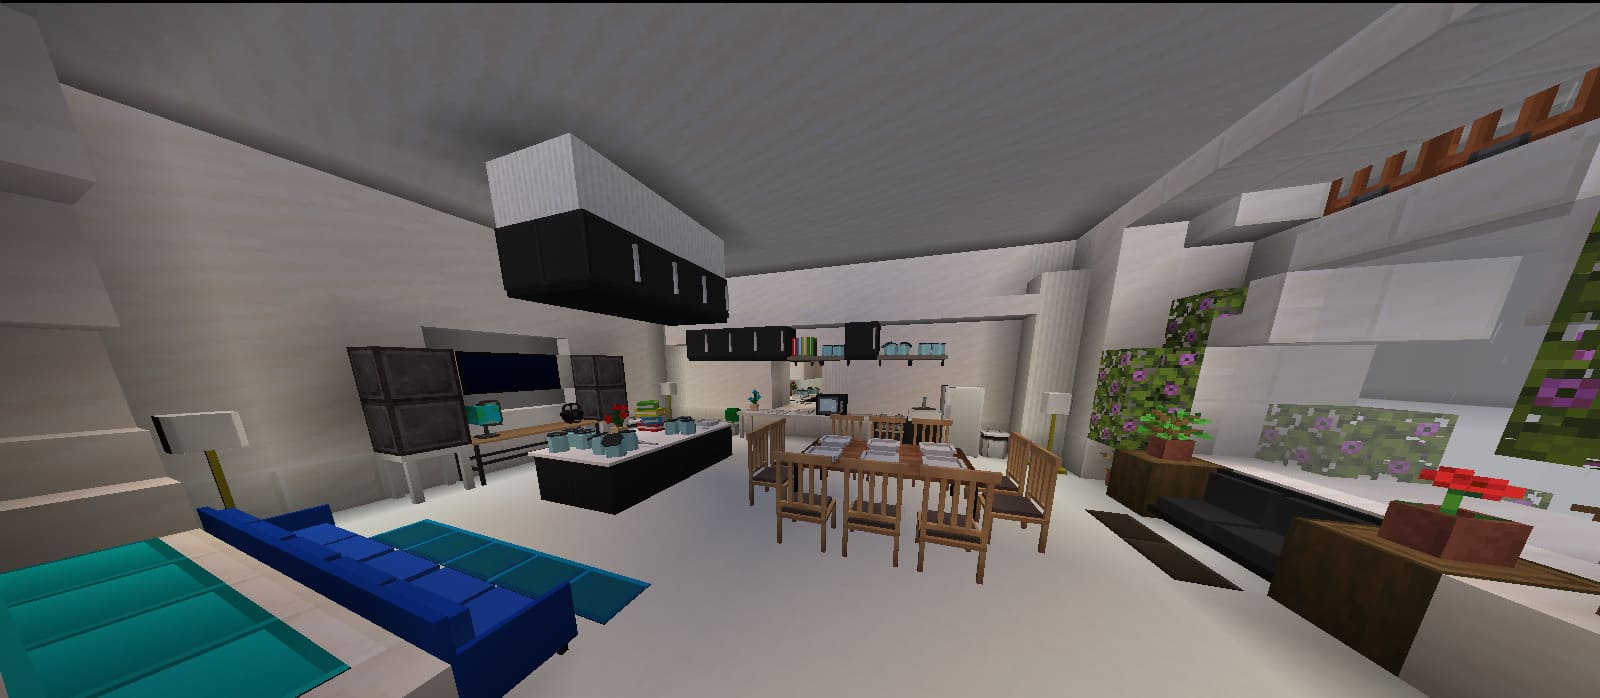 Art Nouveau kitchen in Minecraft